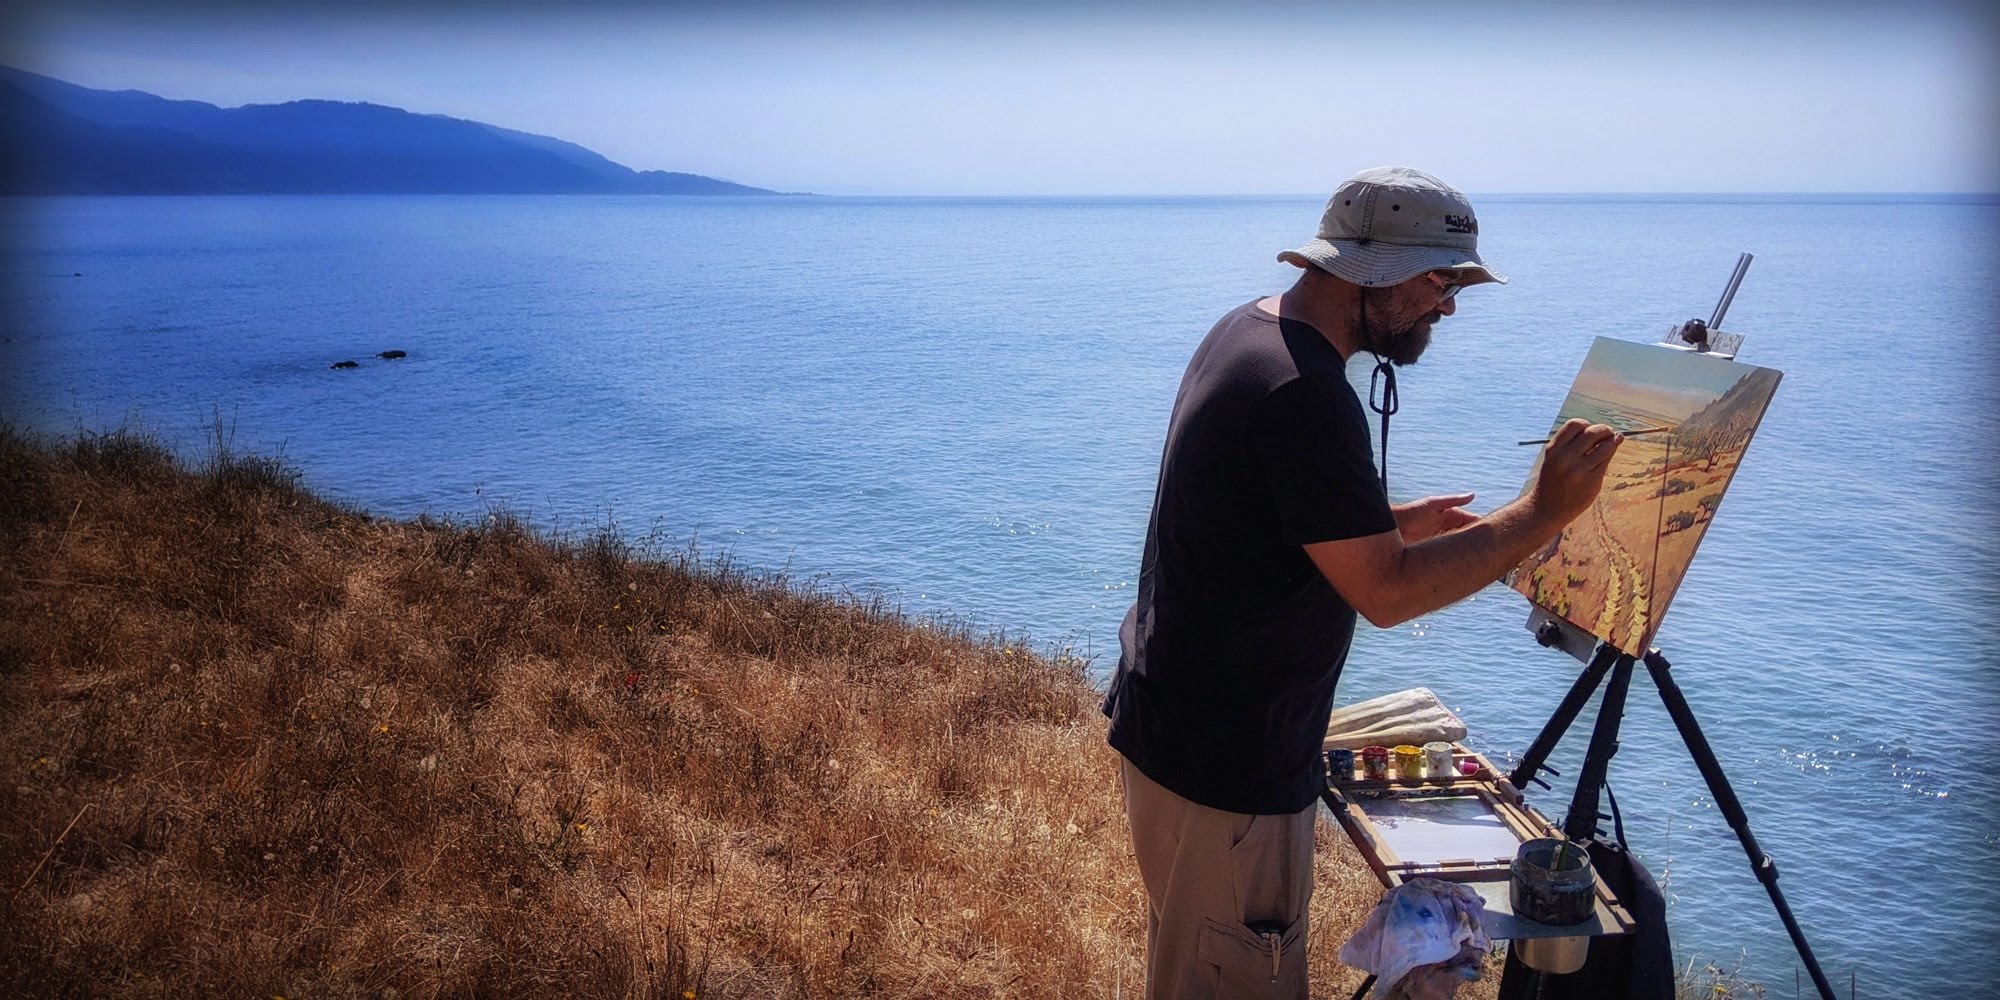 Artist Matt Beard painting plein air on the Lost Coast of Northern California